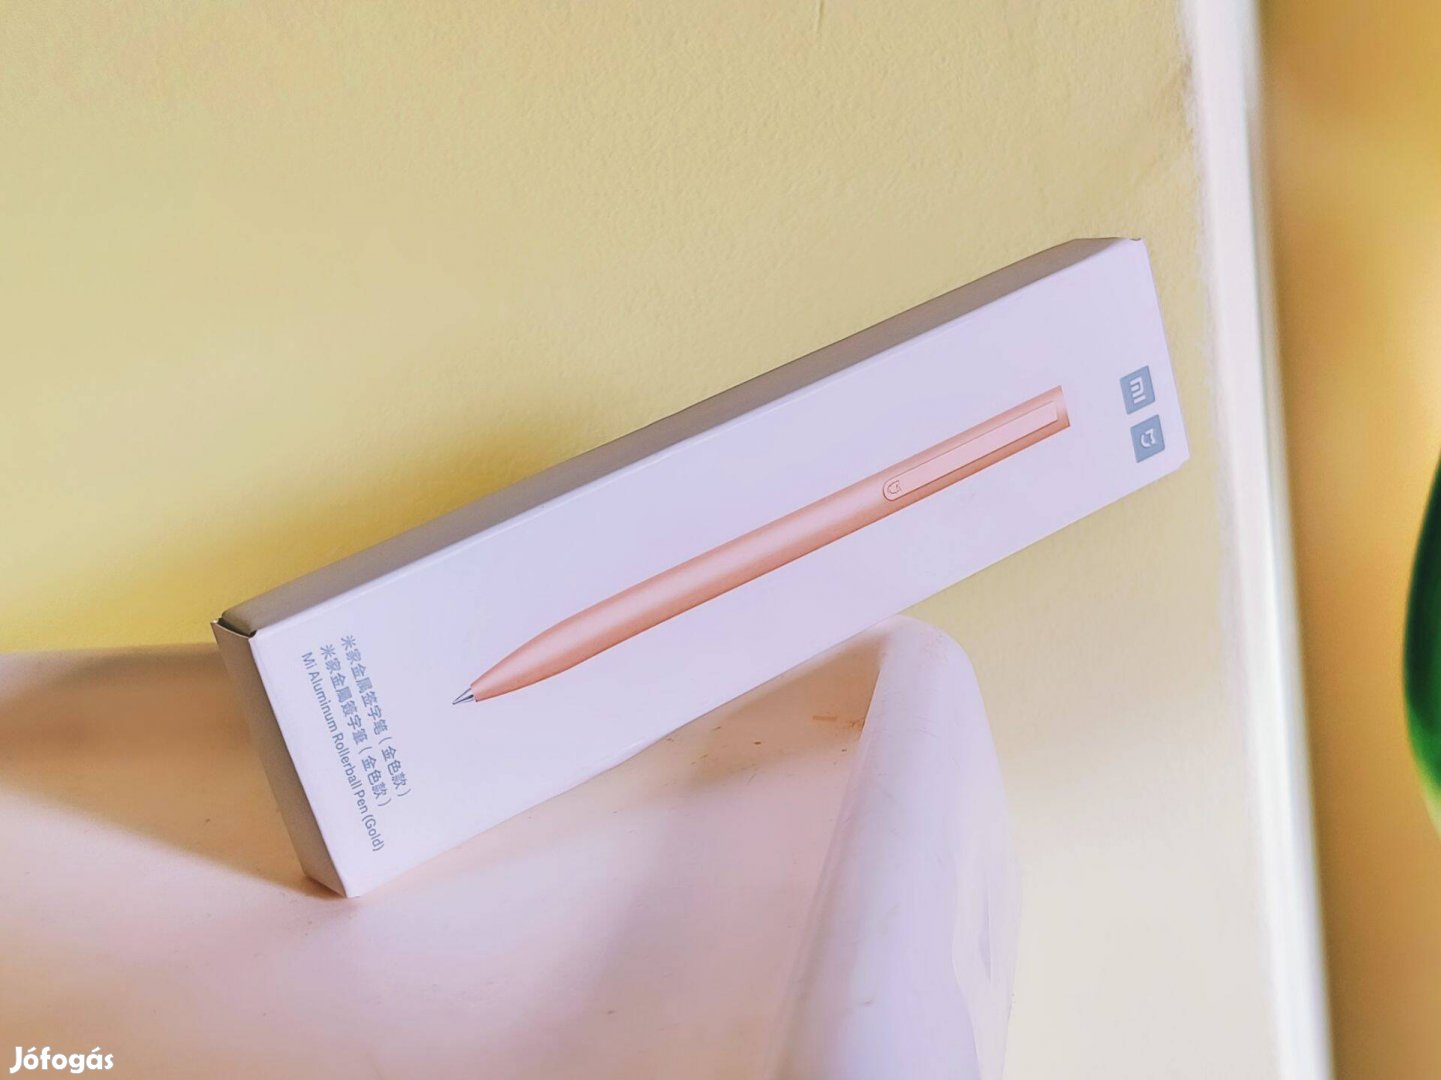 Prémium Xiaomi arany alumínium testű golyóstoll Új toll ajándék irodai